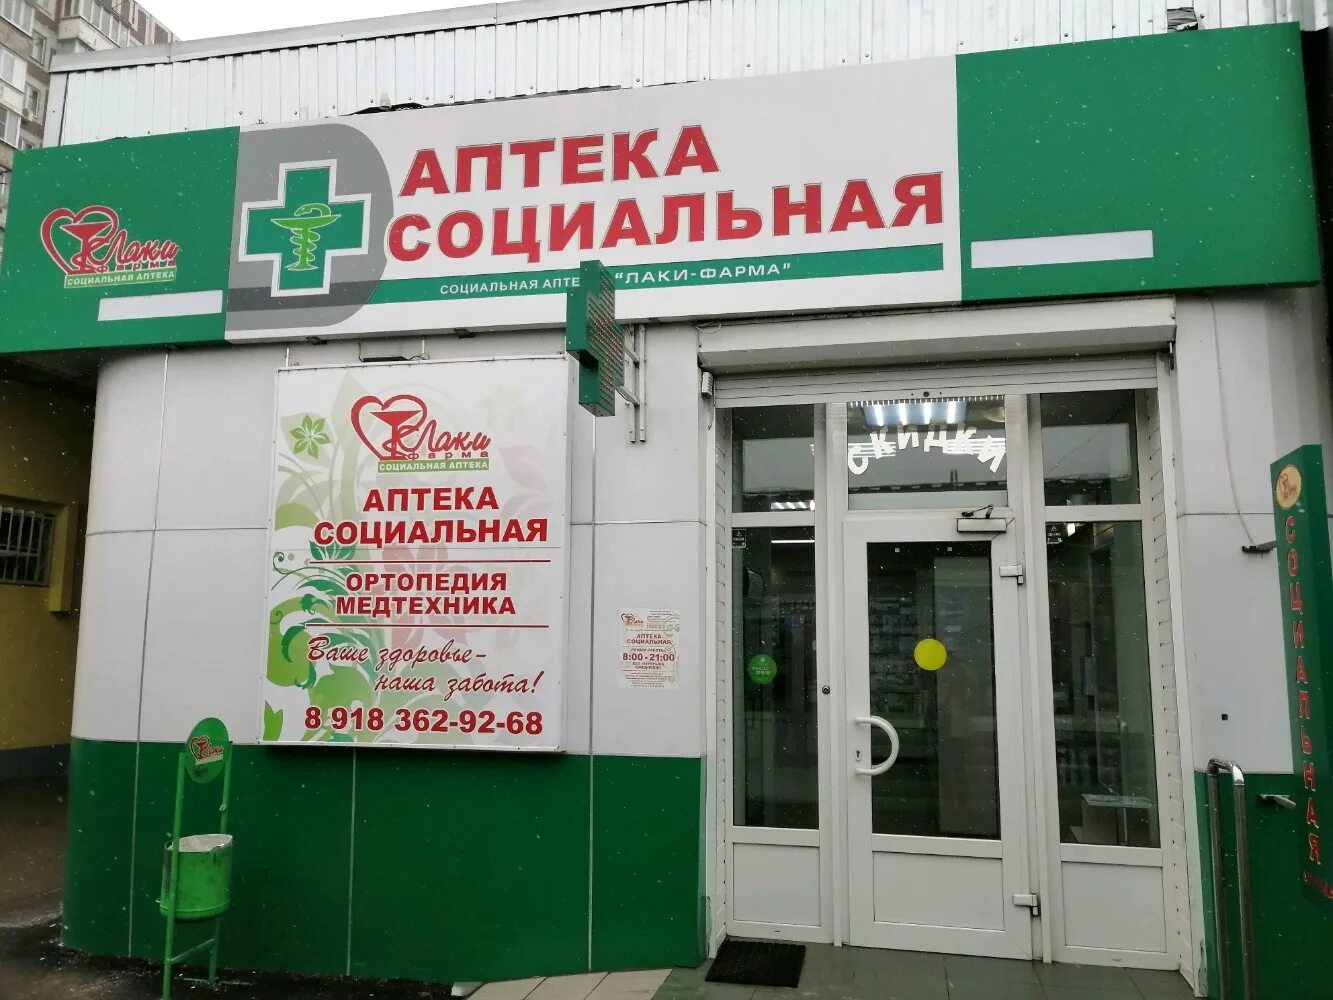 Социальная аптека лаки Фарма. Социальная аптека Краснодар. Первая социальная аптека. Лаки Фарма аптека Краснодар.